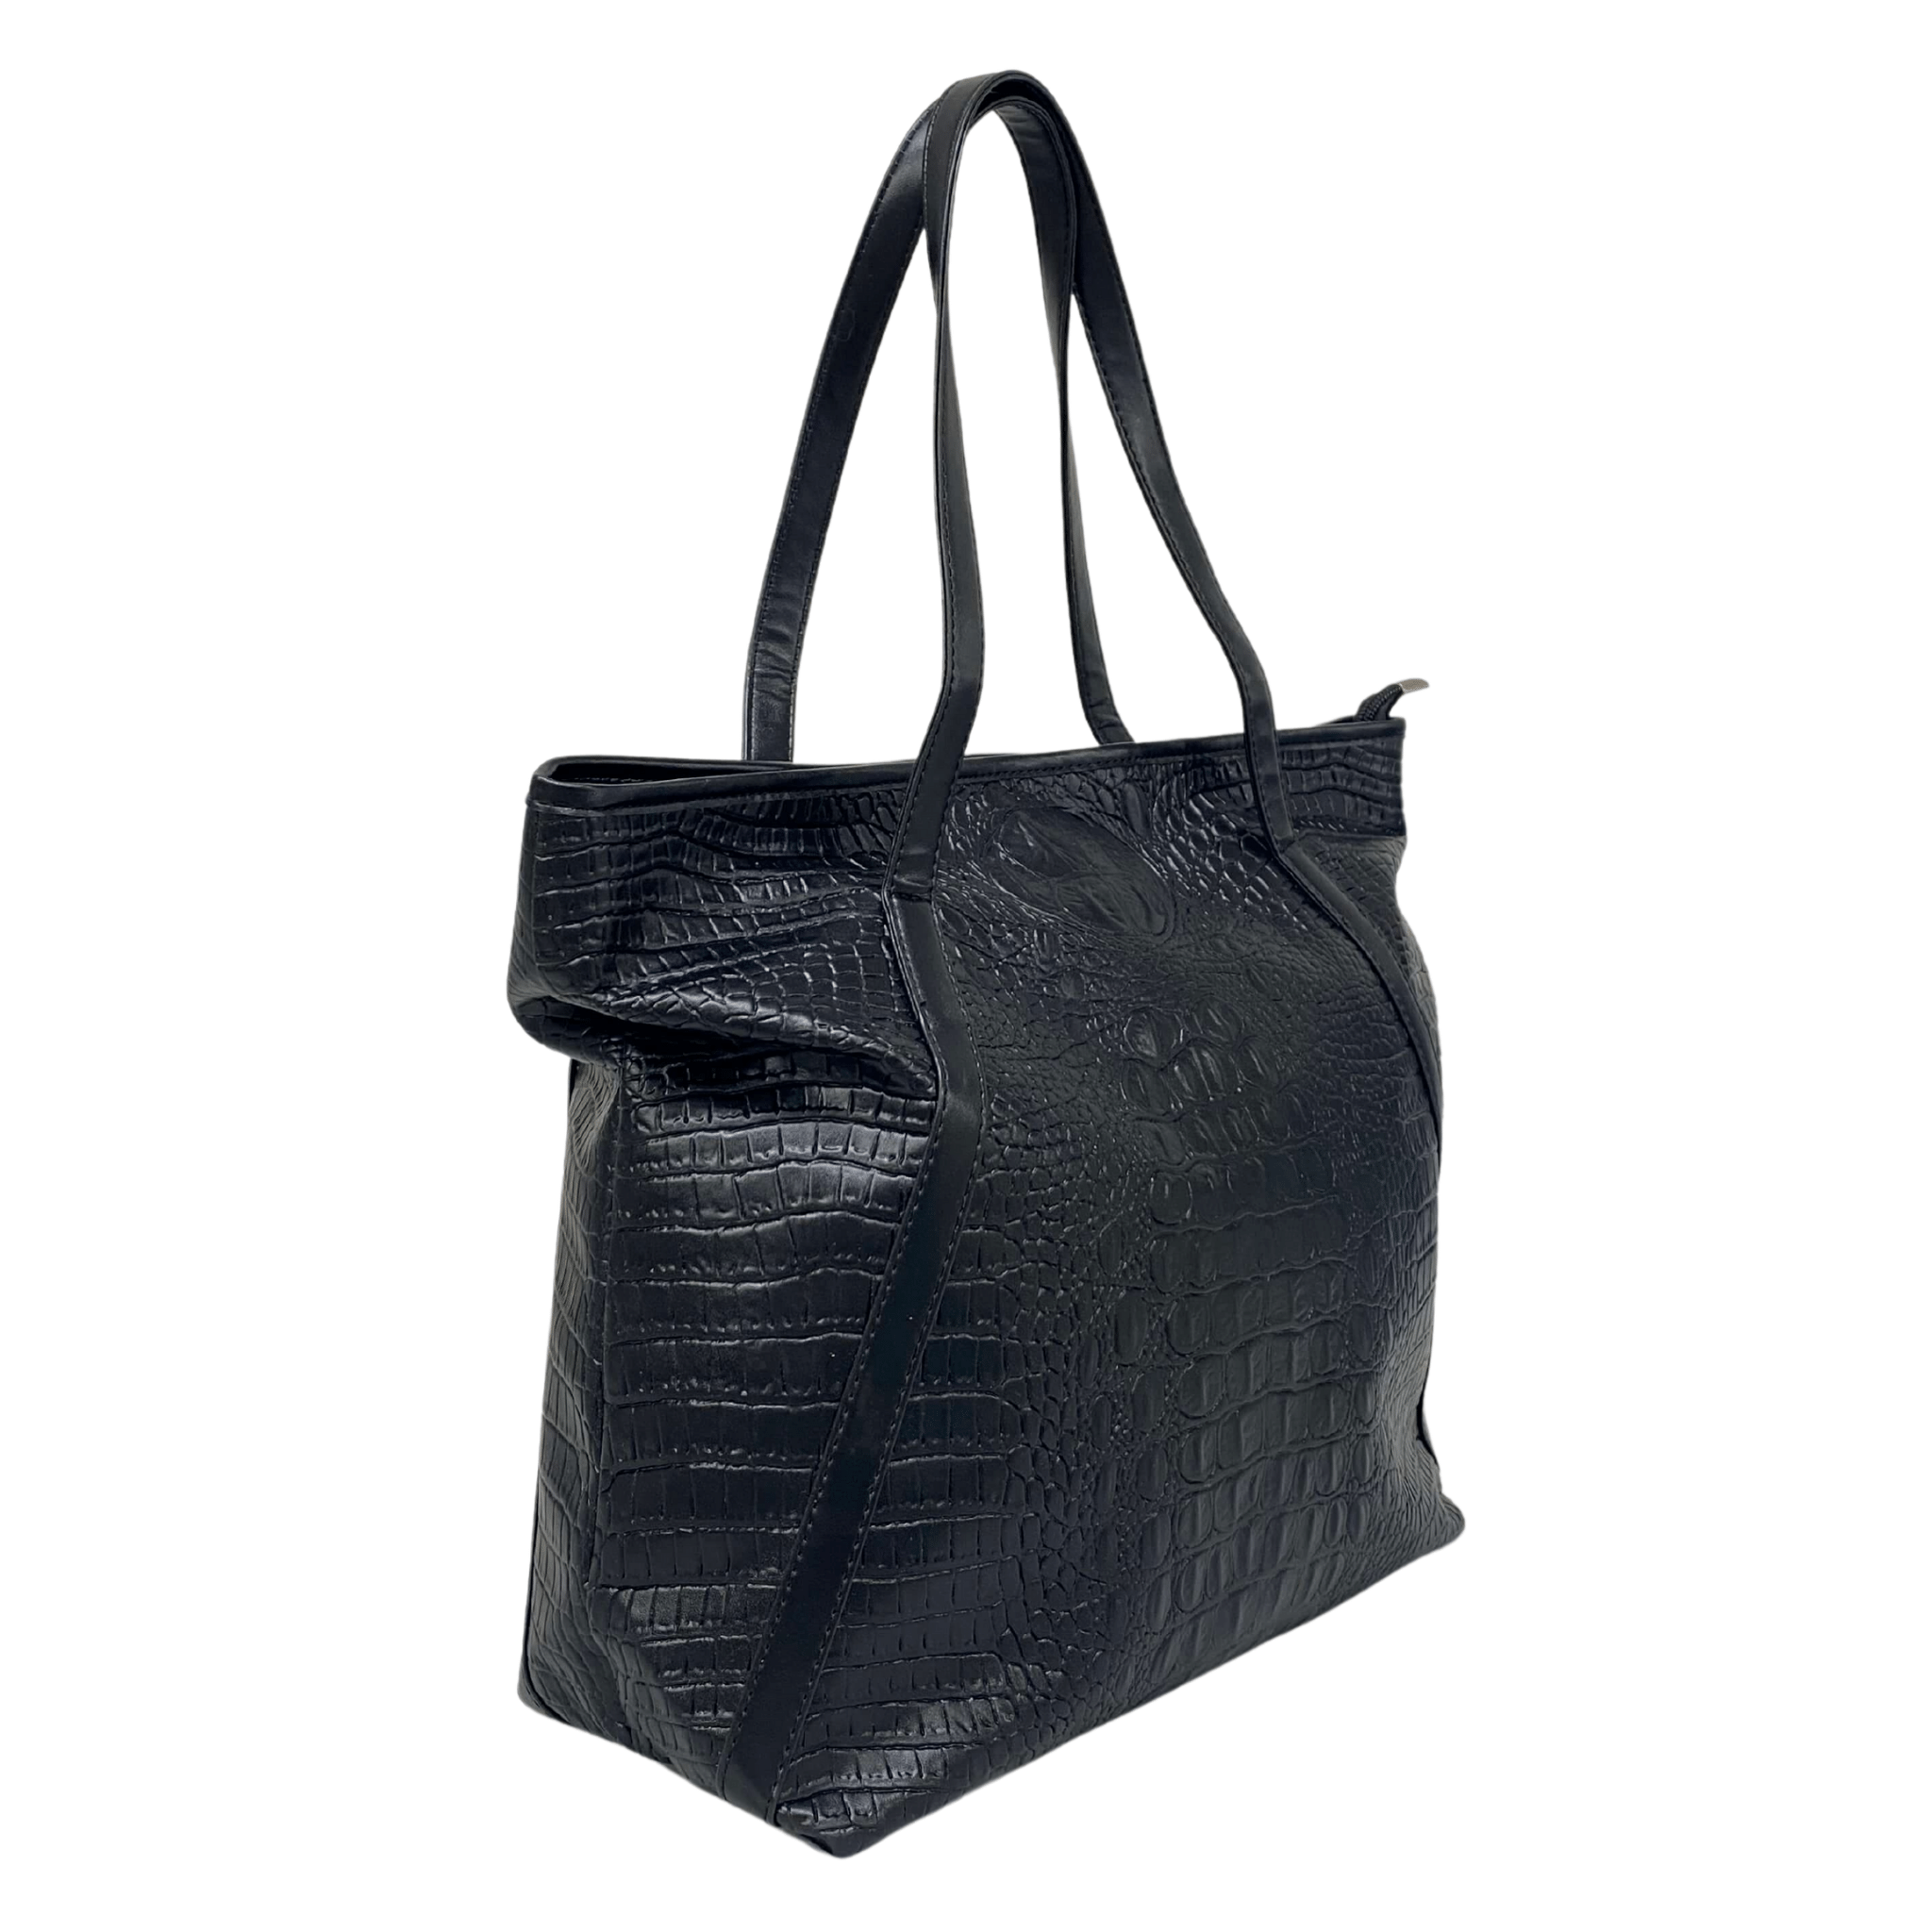 Berri - Women's Black Tote Bag | BeltnBags